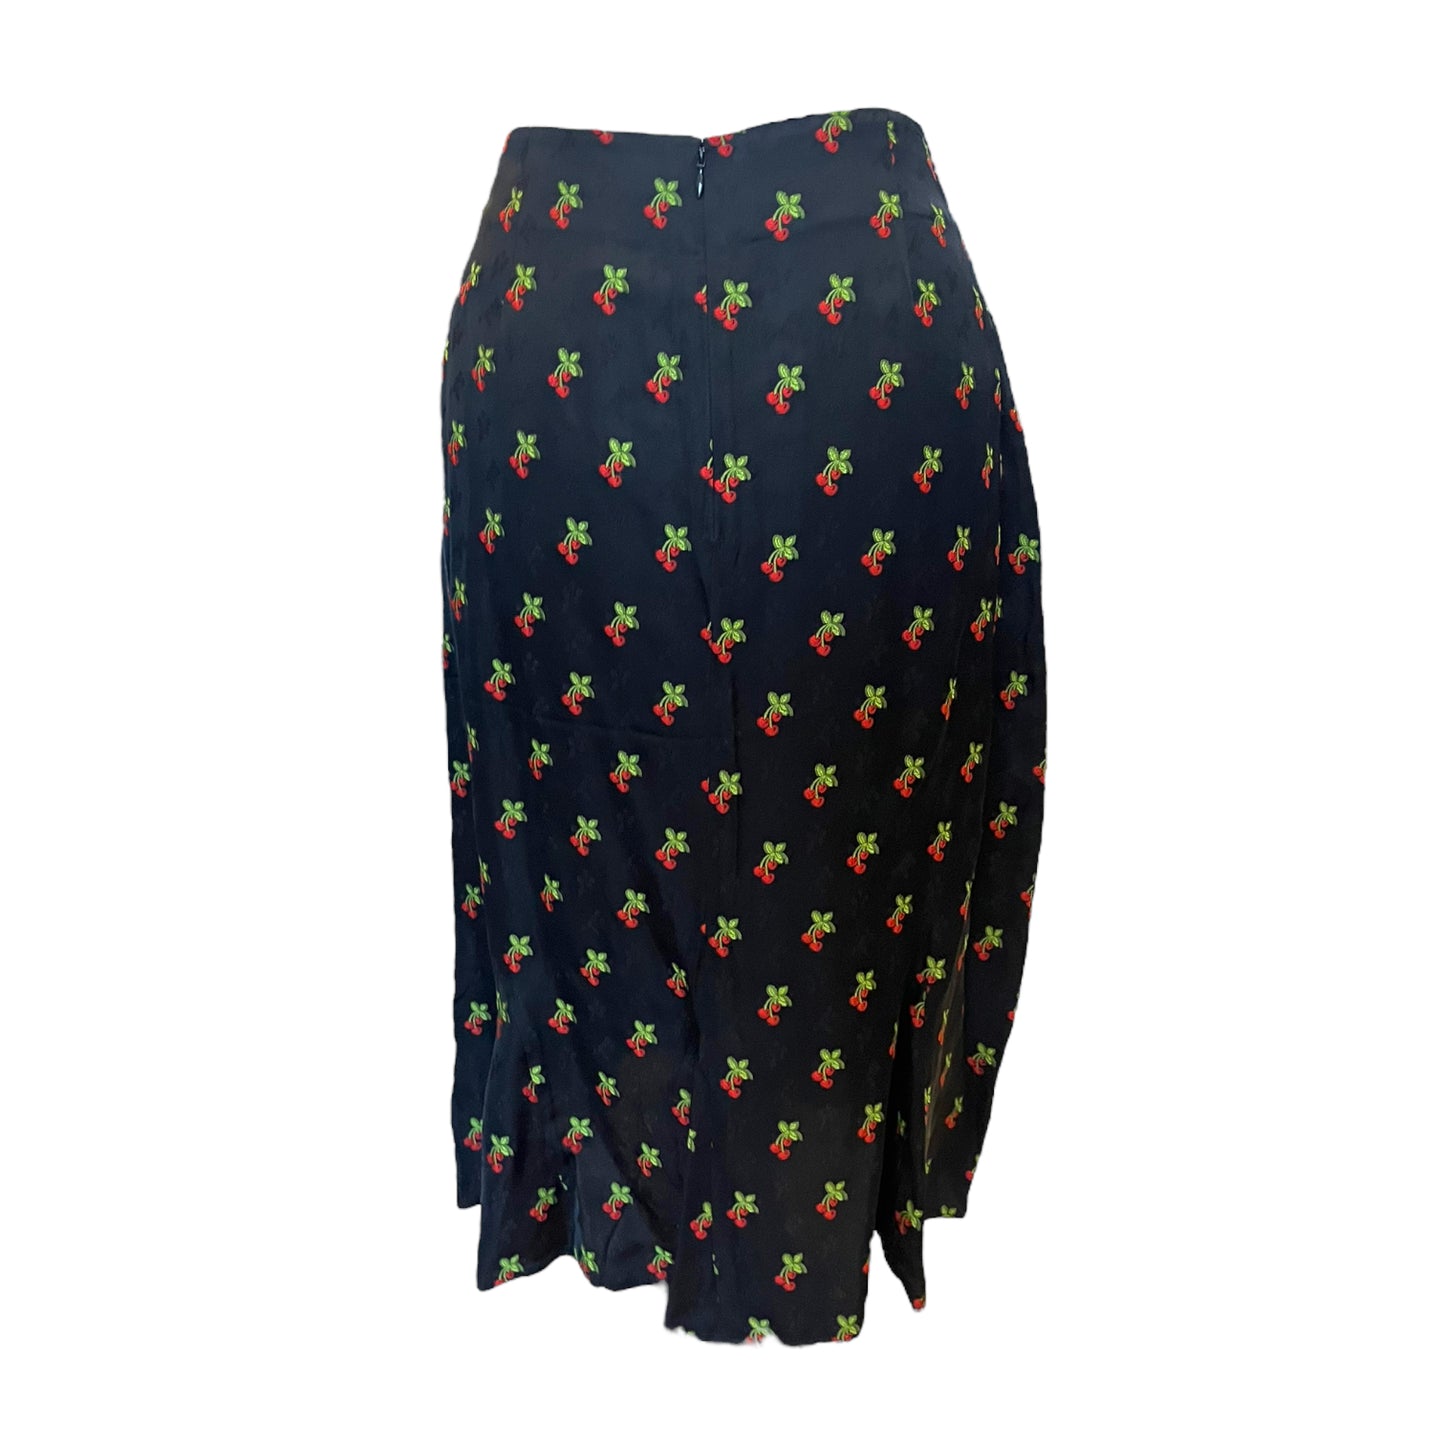 NEW Kitri Black Cherry Print Midi Skirt